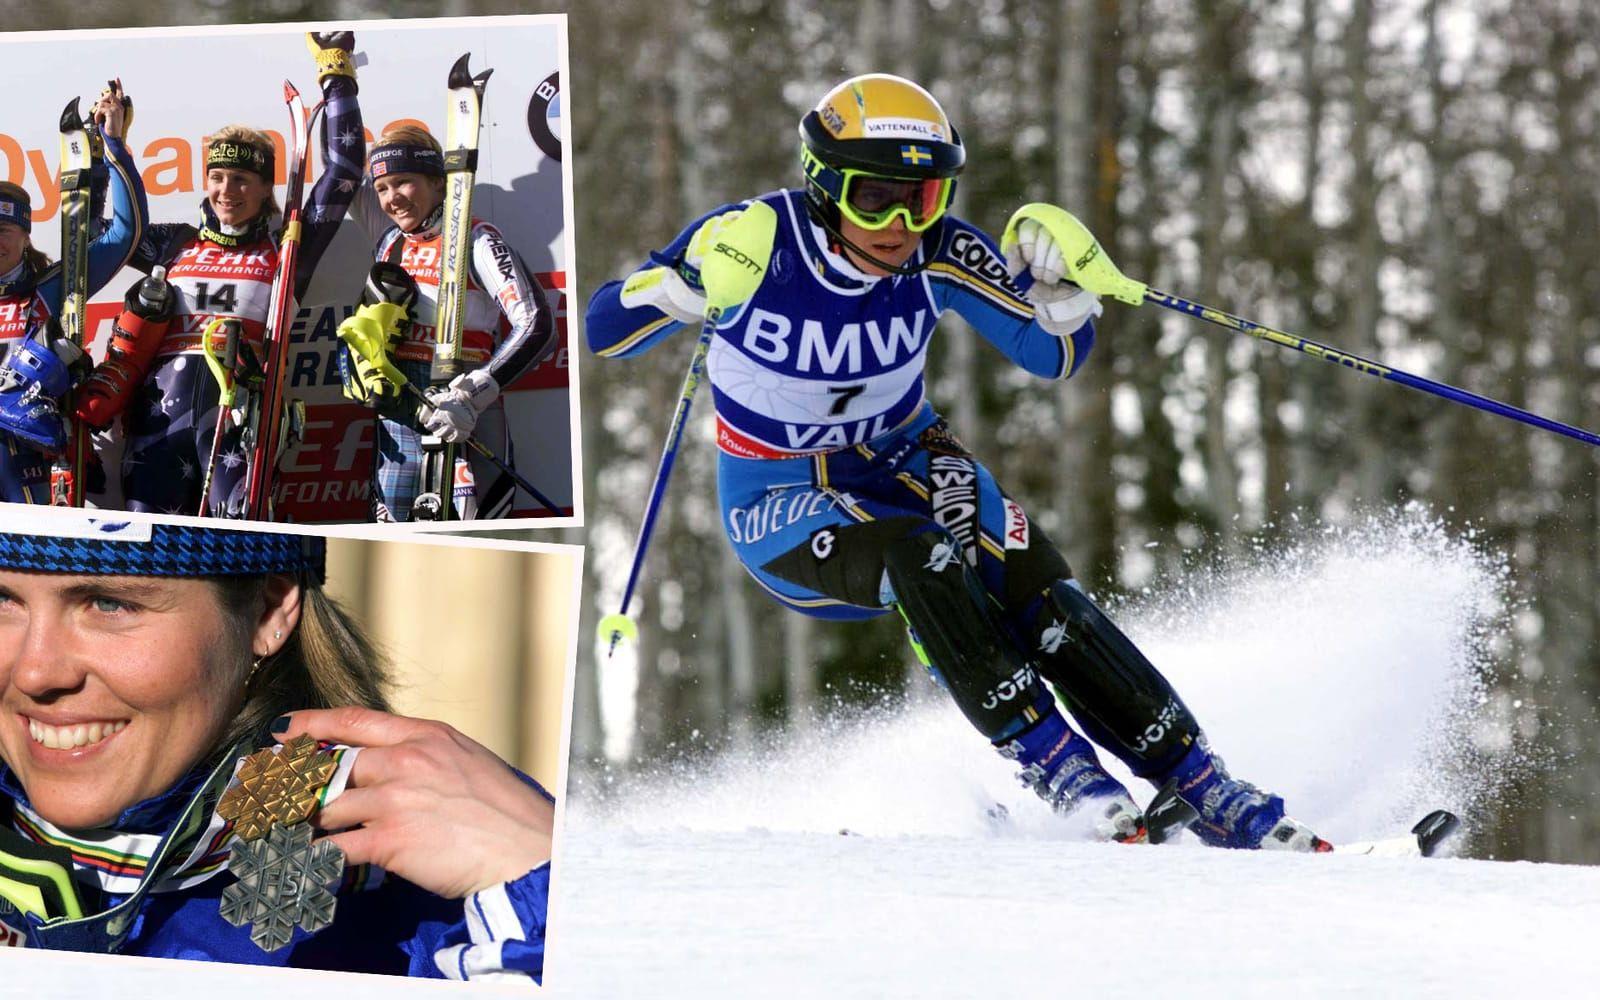 Två år senare vann <strong>Wiberg kombinationen och fixade ett slalomsilver.</strong> i Vail. Foto: Bildbyrån